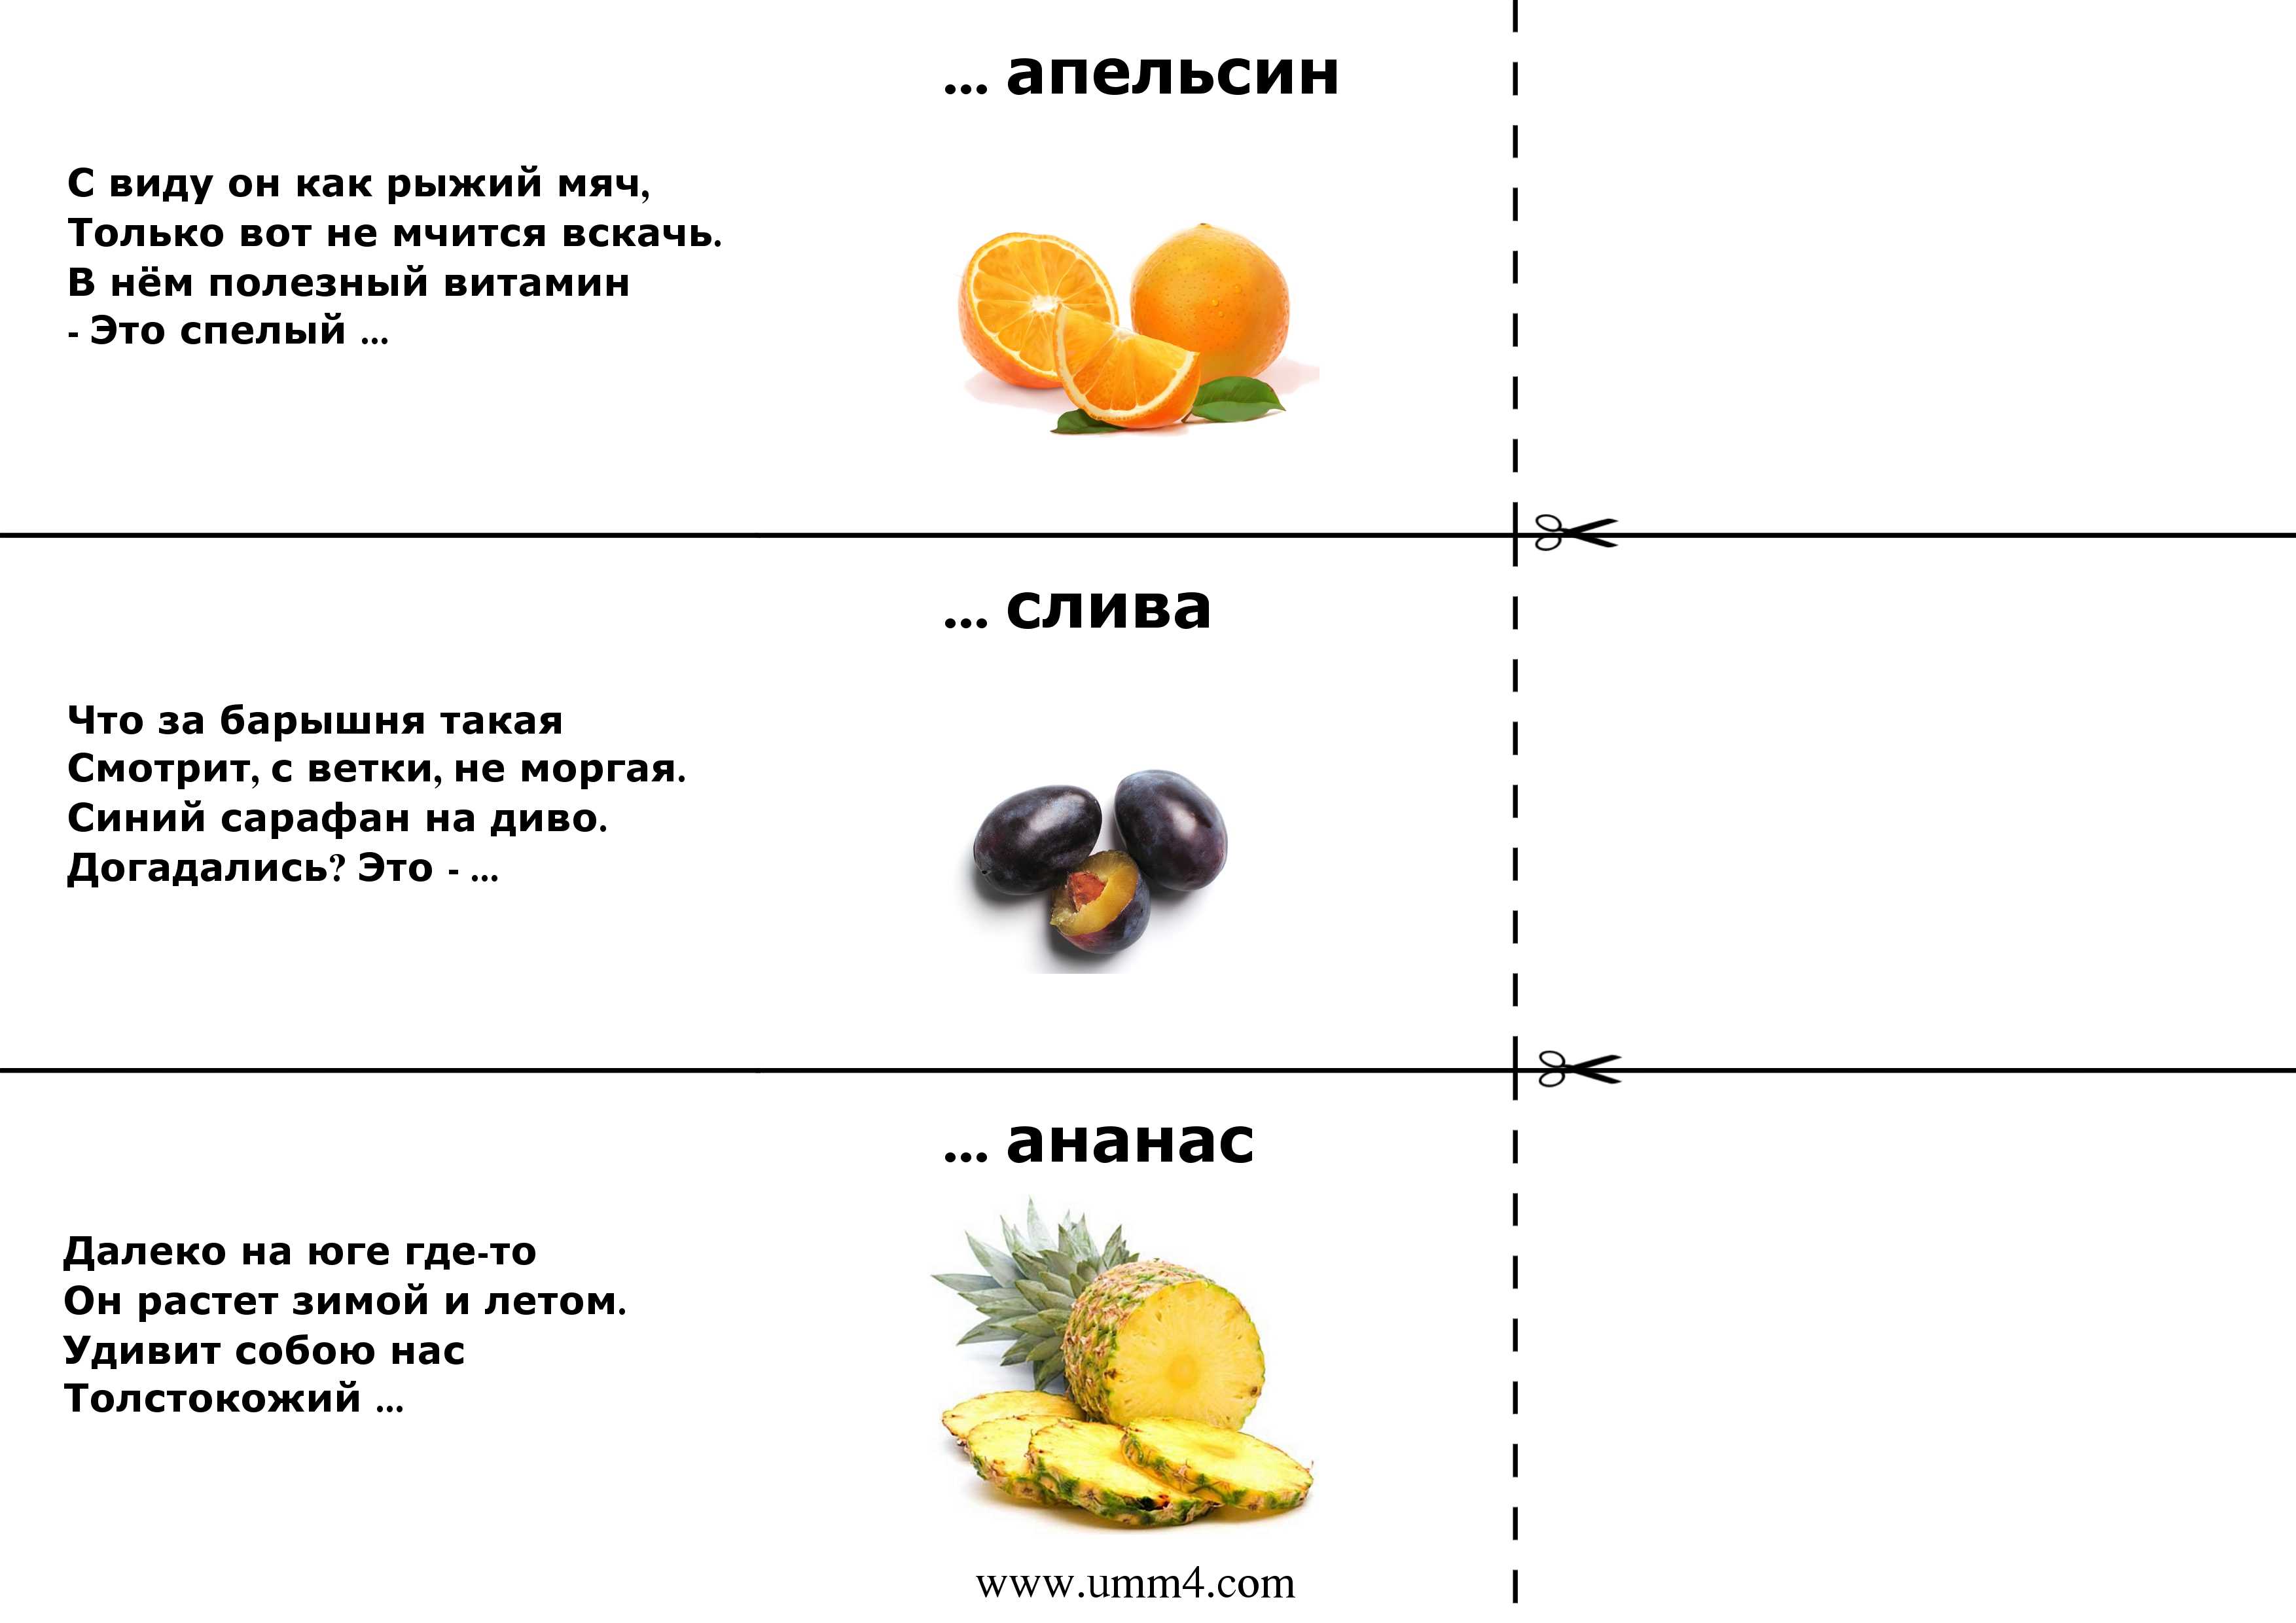 Загадки про русский язык с ответами